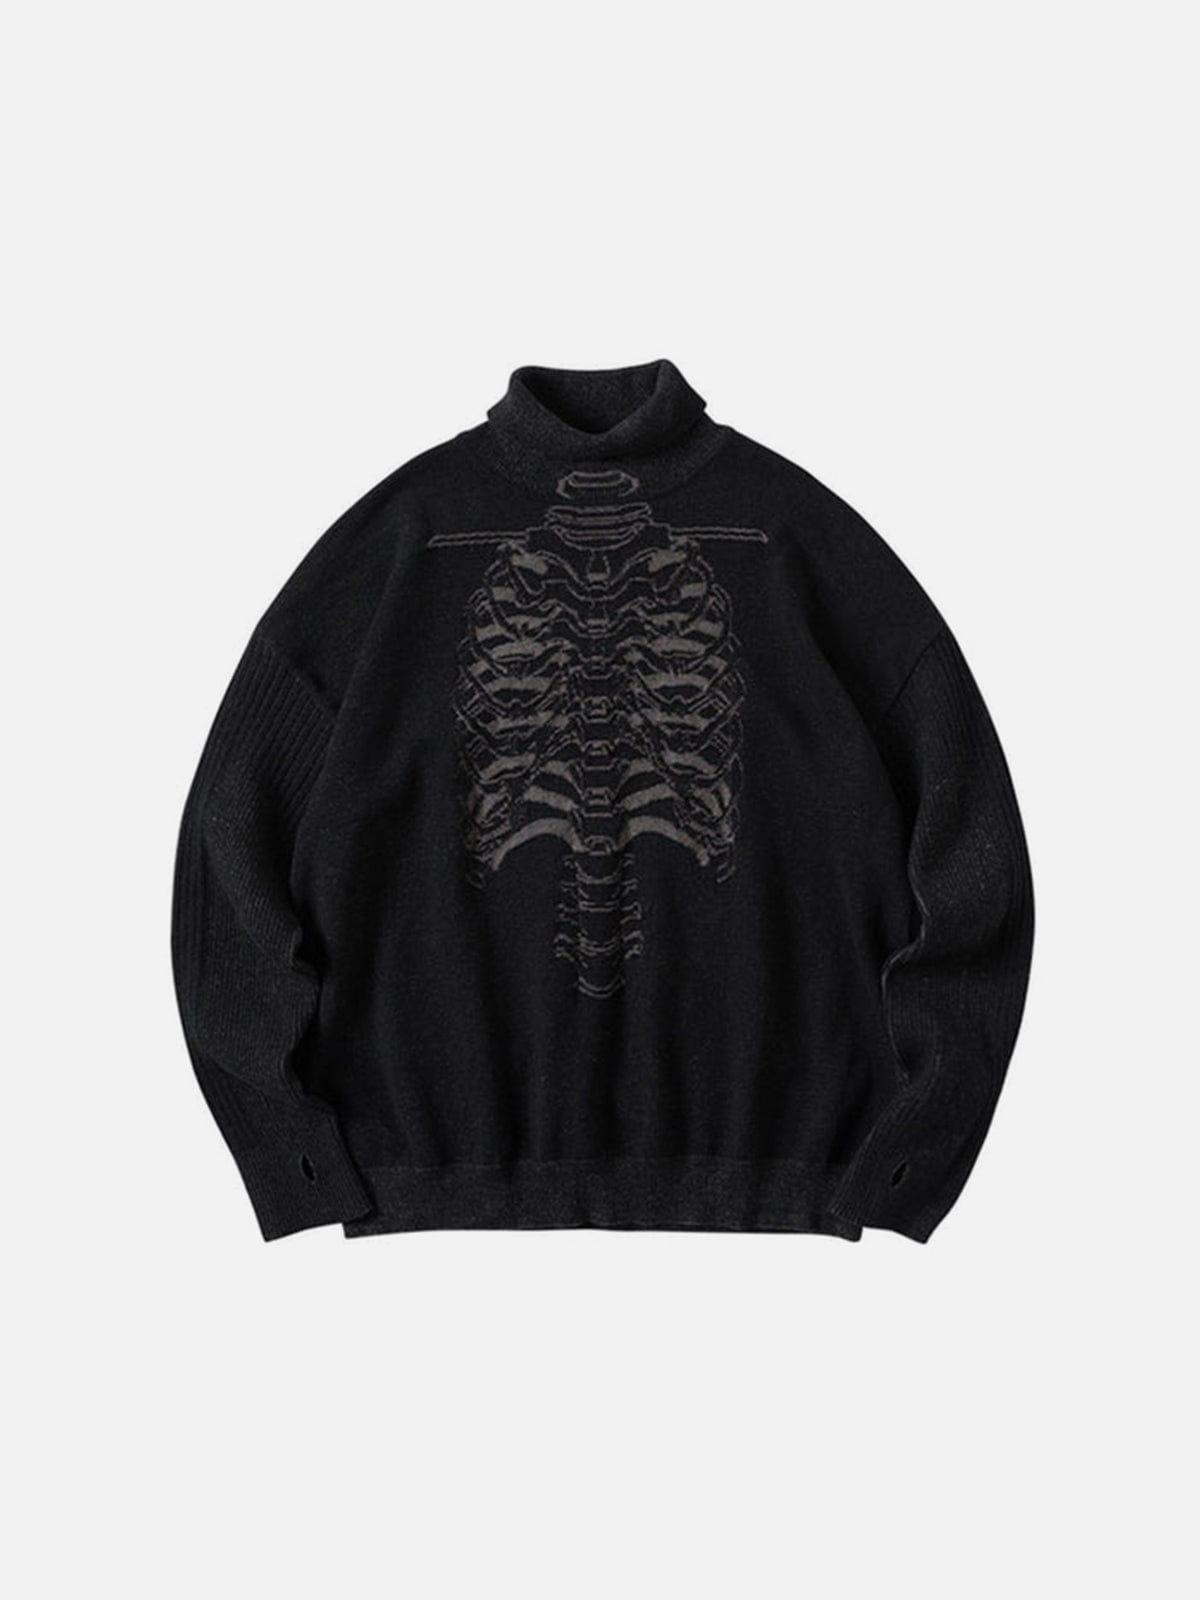 NEV Dark Mechanical Skeleton Print Knitted Sweater